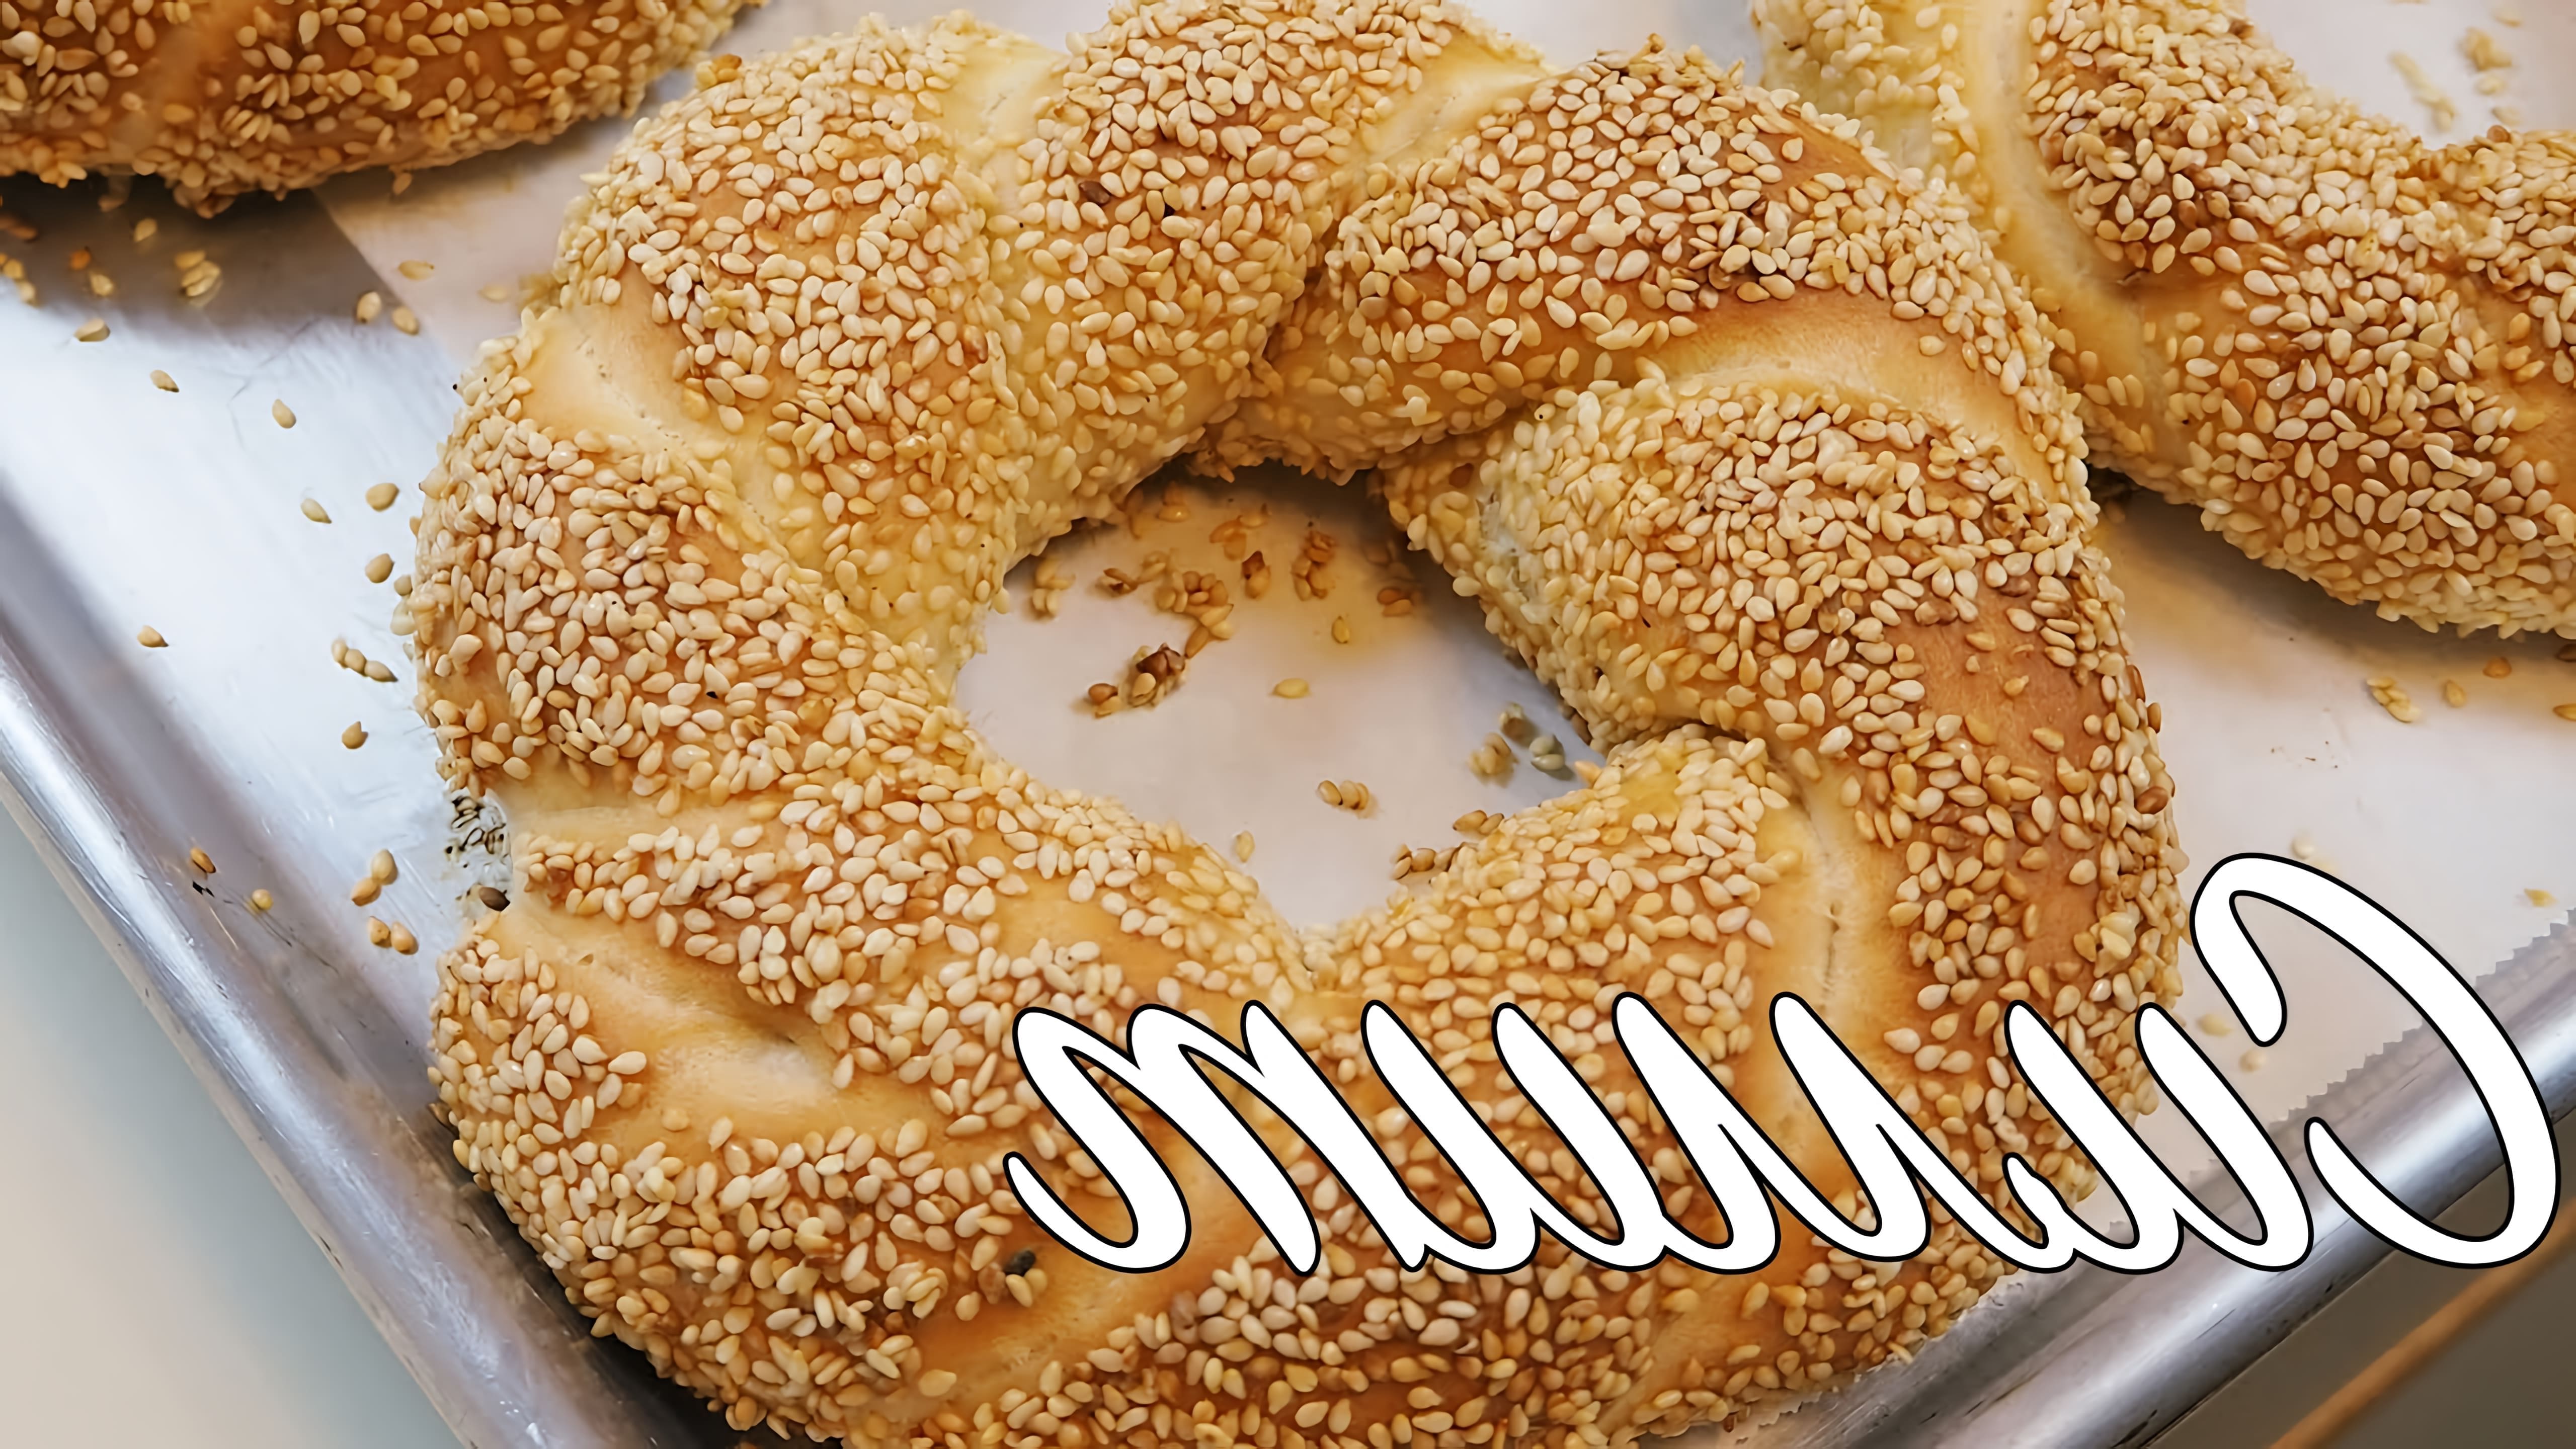 Mazali KULCHALAR Simit - это видео-ролик, который представляет собой обзор на симиты, популярный турецкий хлебный продукт